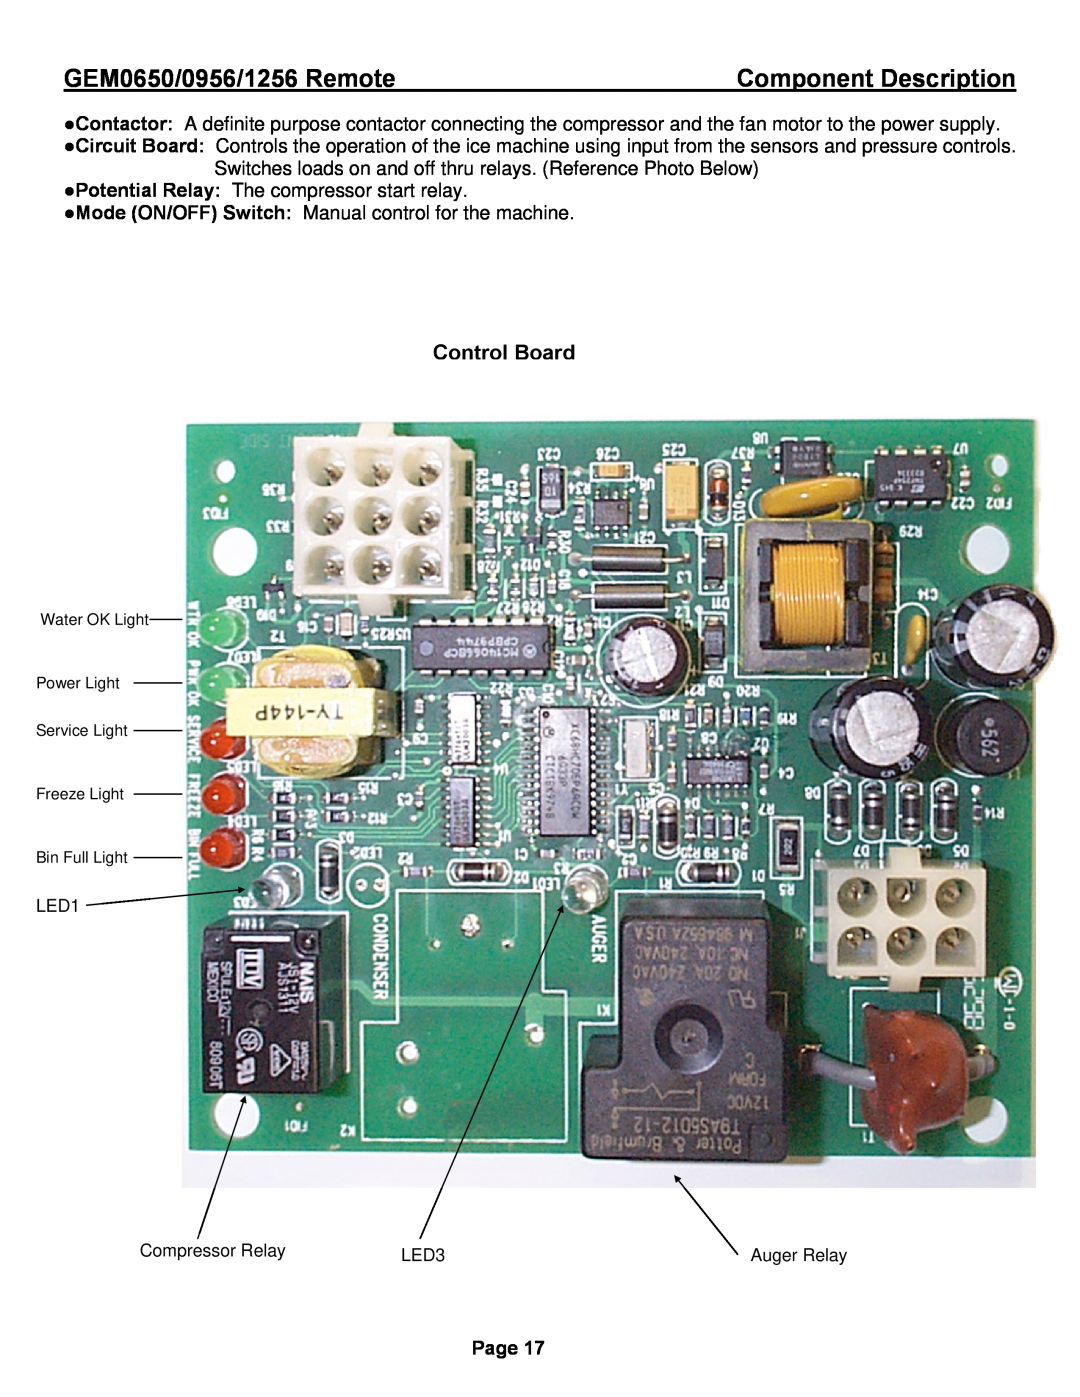 Ice-O-Matic GEM0650R, GEM1256R, GEM0956R Control Board, GEM0650/0956/1256 Remote, Component Description, Page 